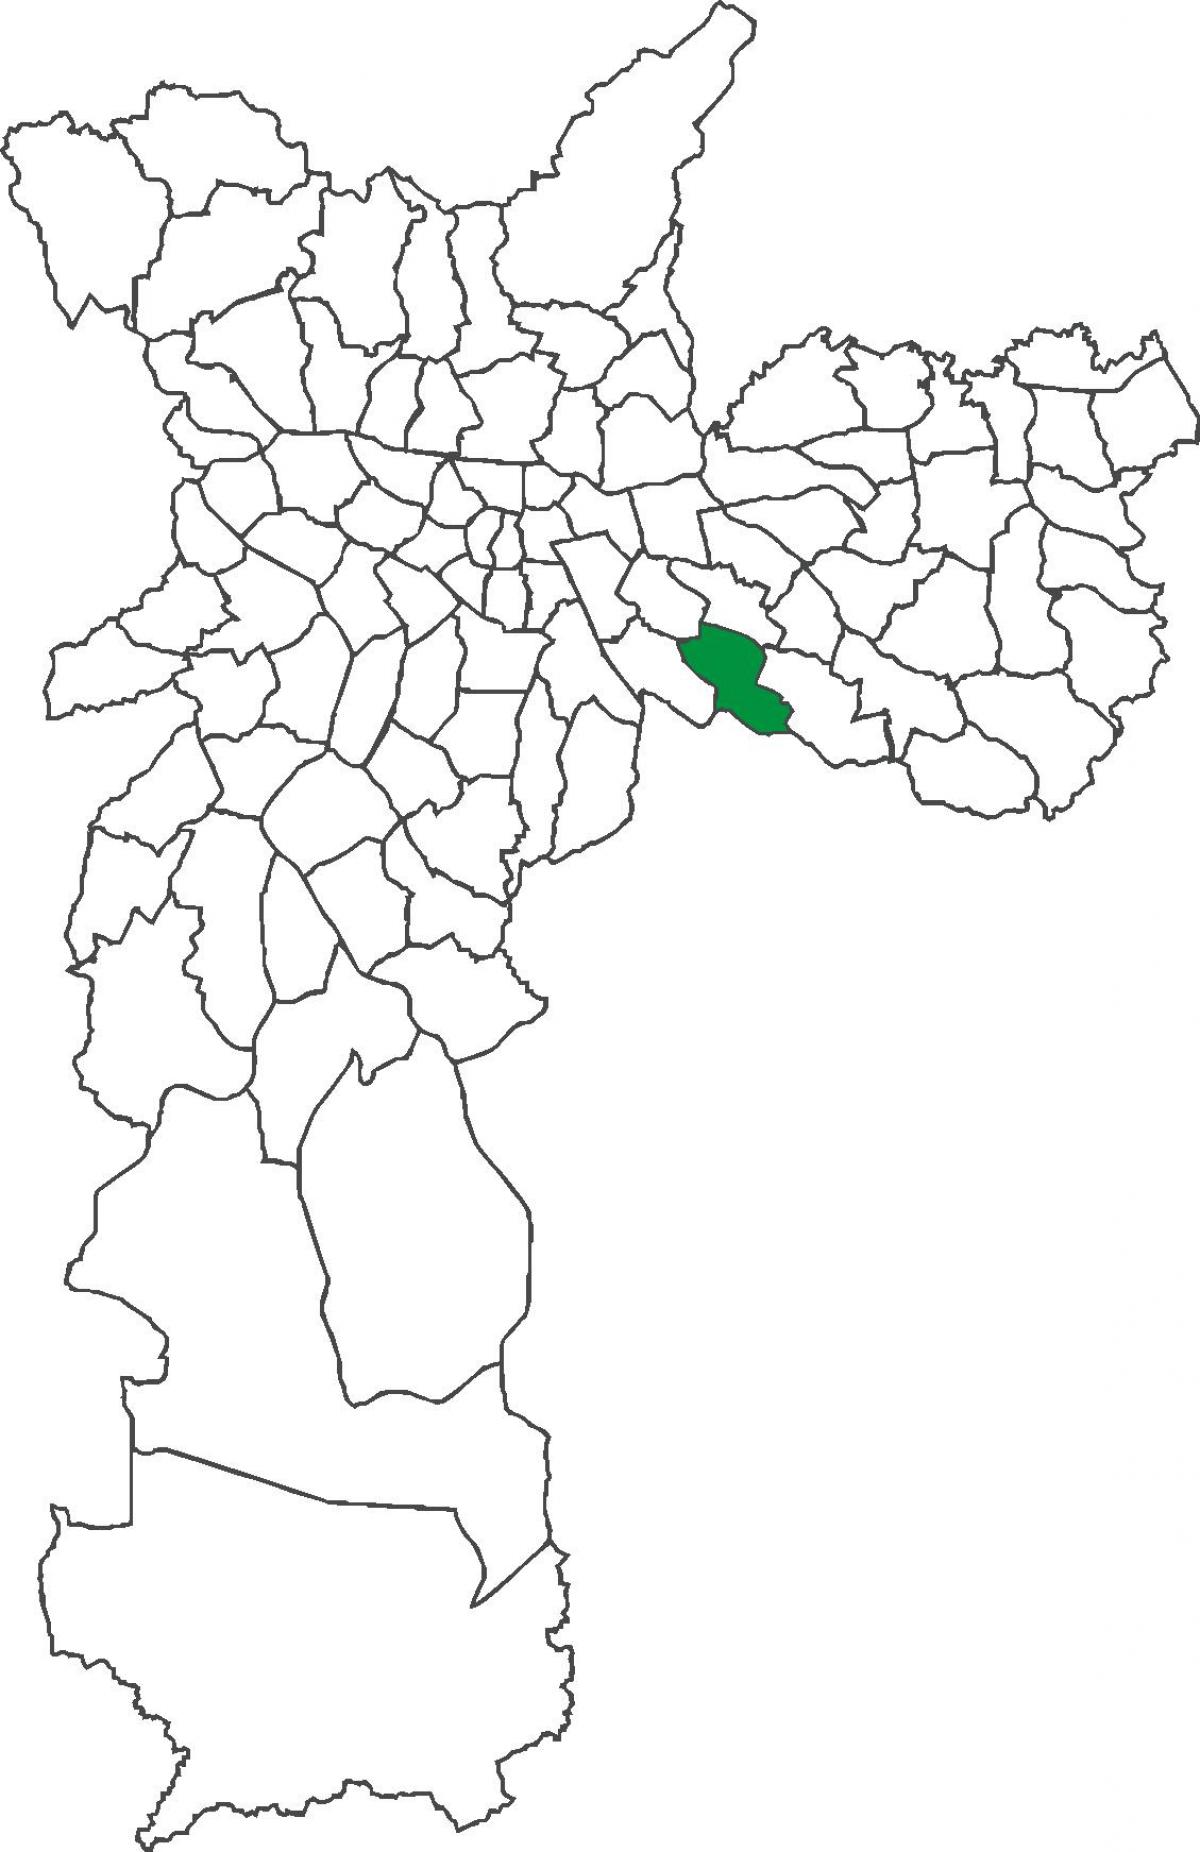 מפה של סאו לוקאס מחוז